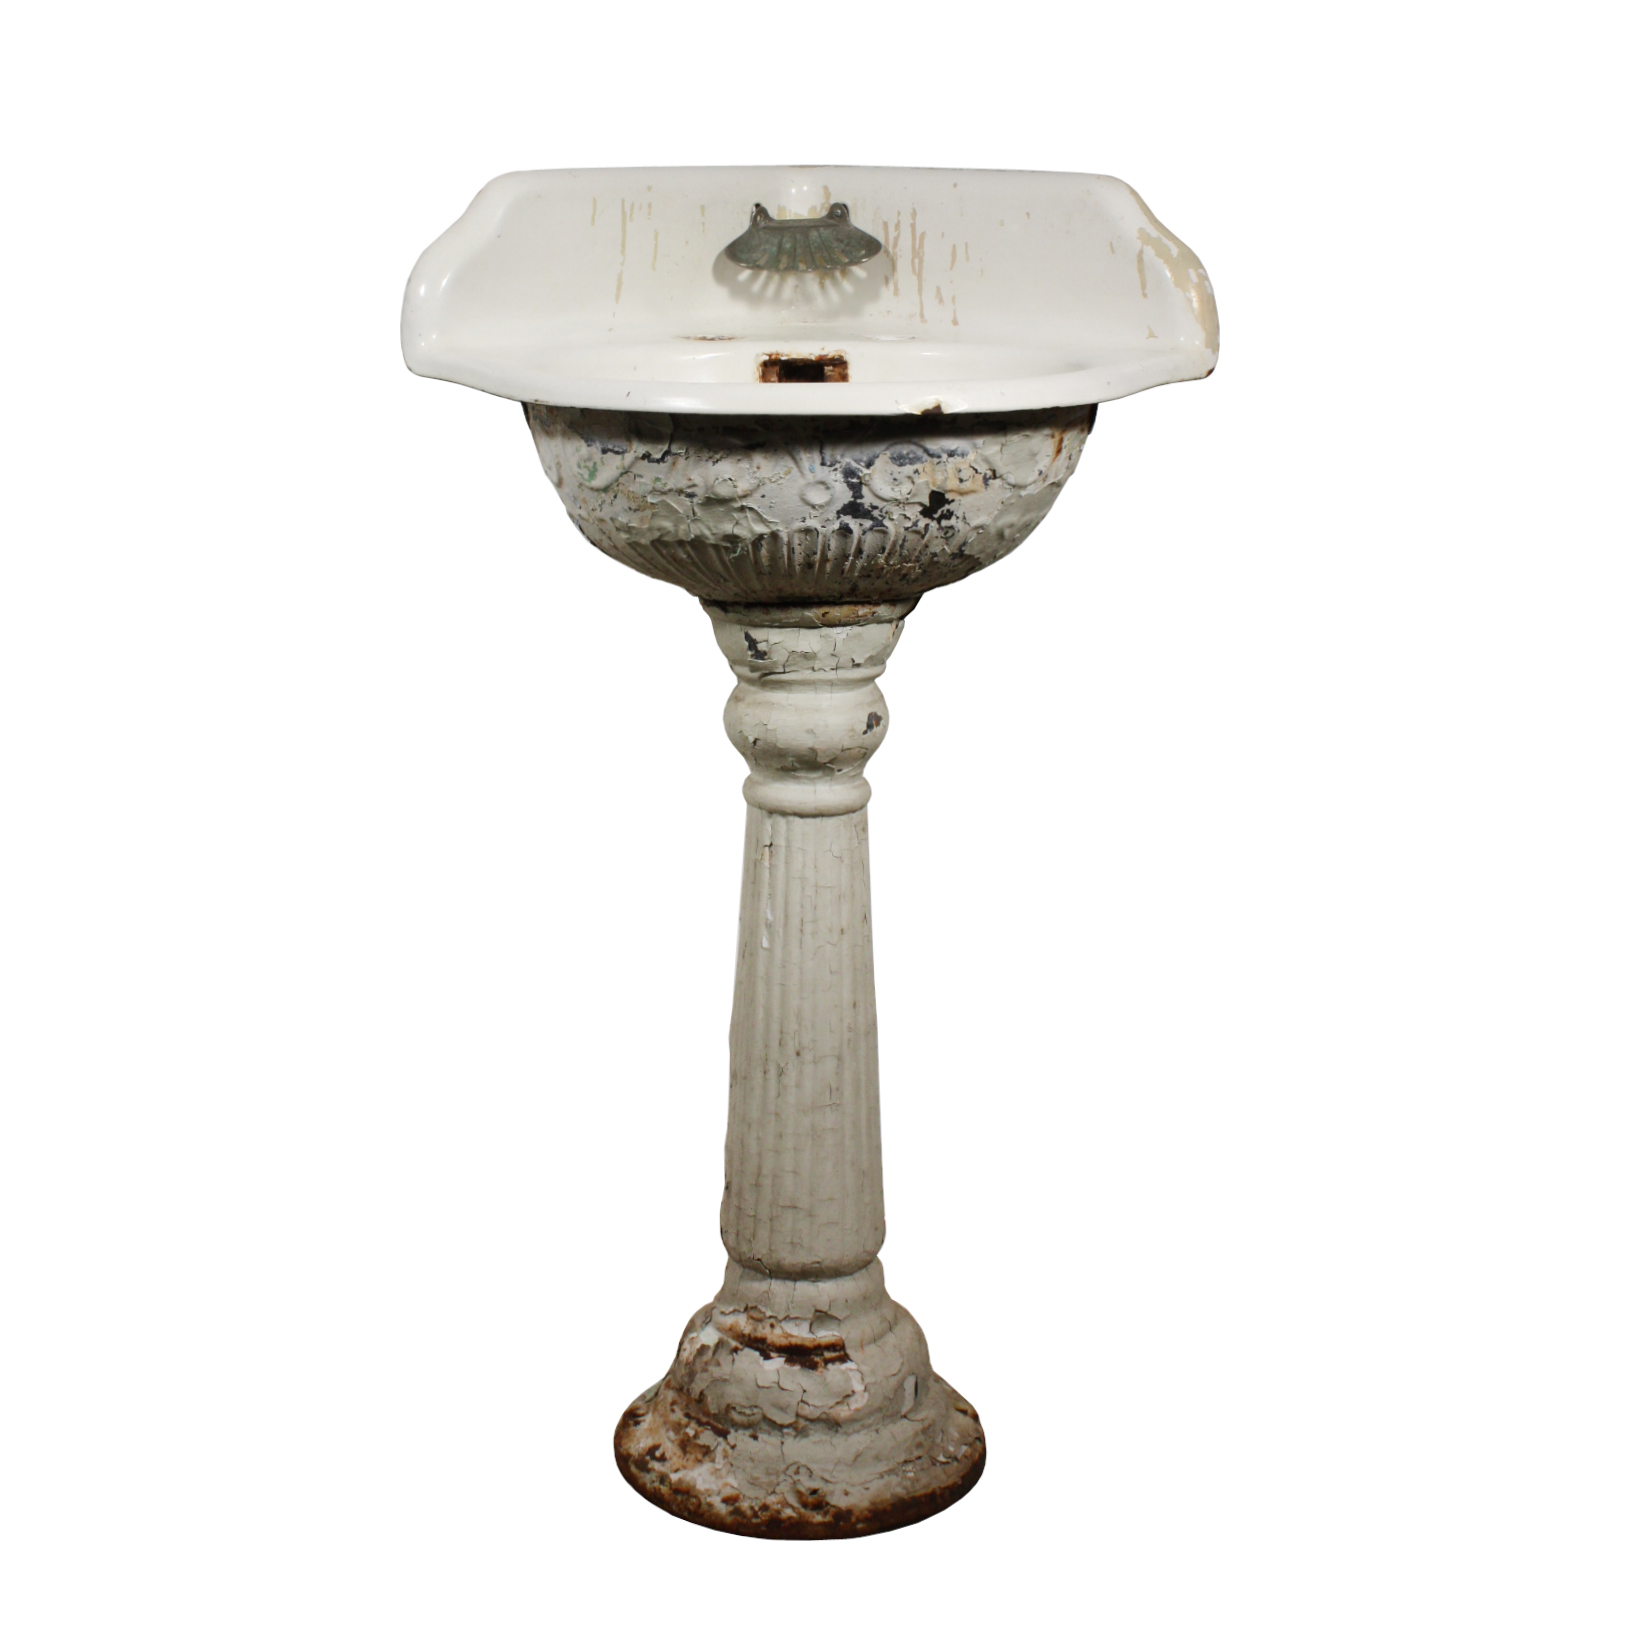 SOLD Lovely Antique Porcelain Corner Pedestal Sink, c.1910 -45106